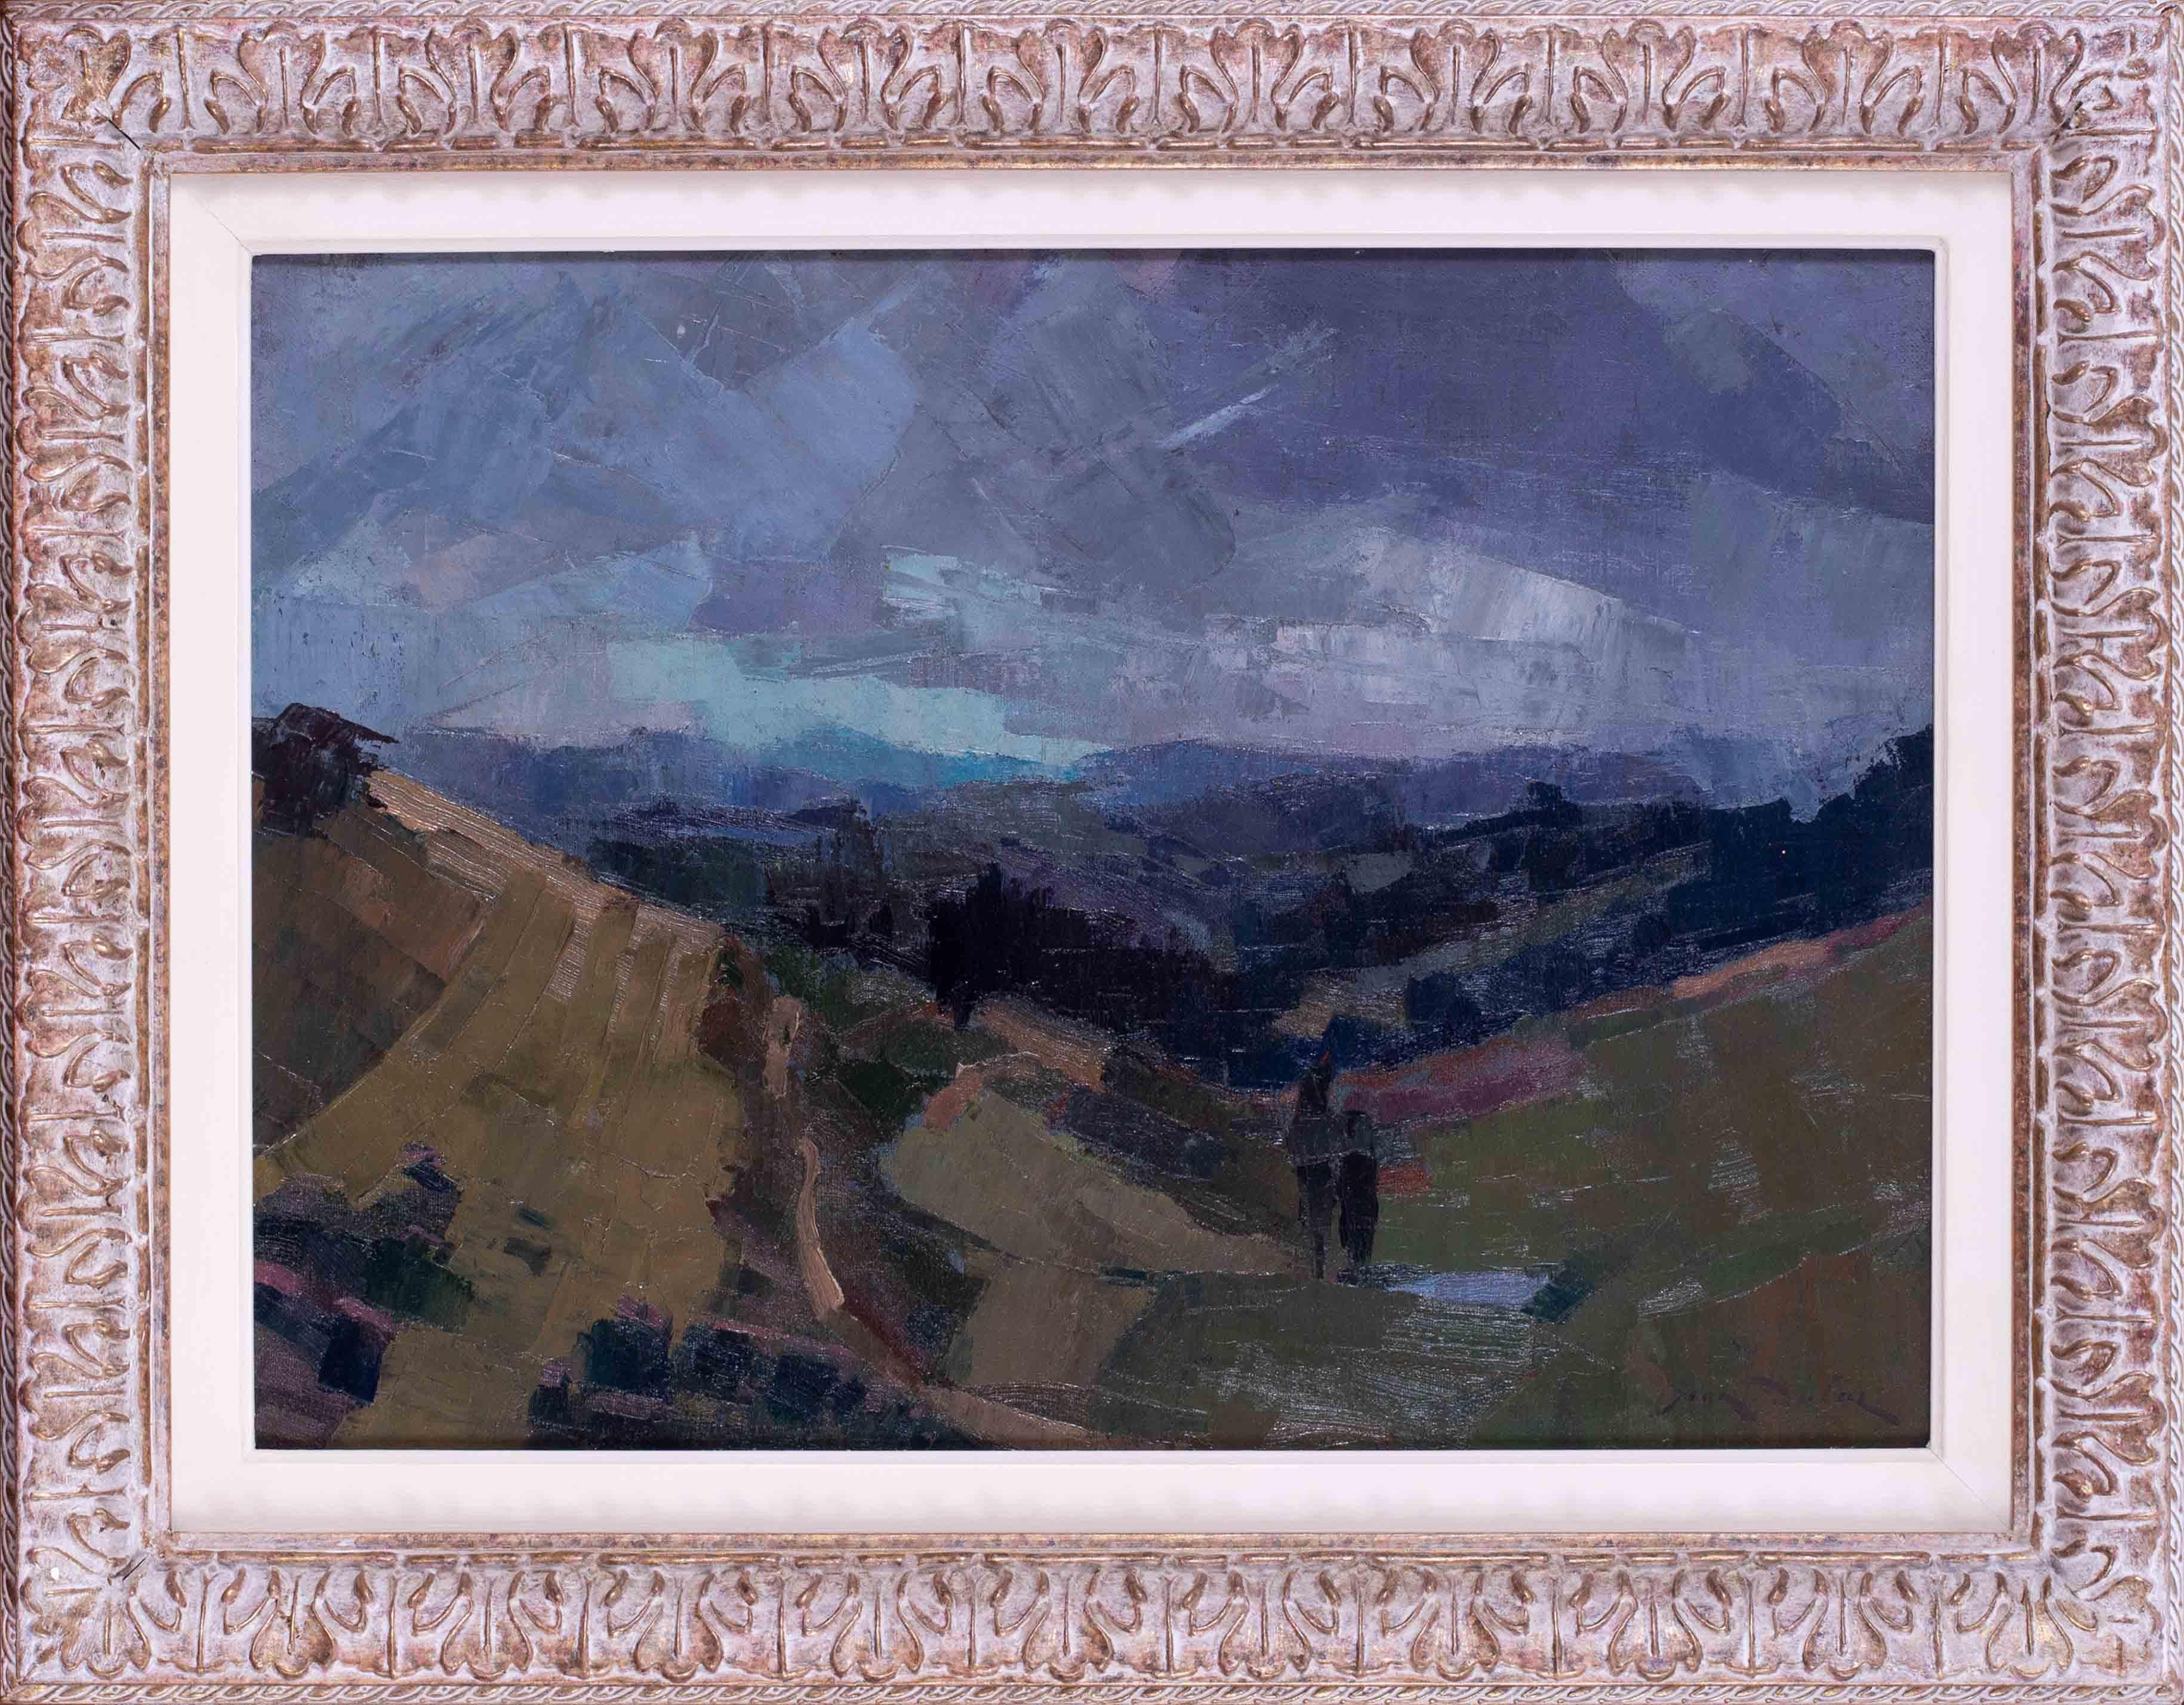 Un très beau paysage post-impressionniste peint en 1962 par l'artiste lyonnais Jean Dulac.

Jean Dulac est né à NO AGE mais, dès l'âge de 5 ans, il a vécu toute sa vie à Lyon. Son père était photographe et son influence a peut-être incité Jean à